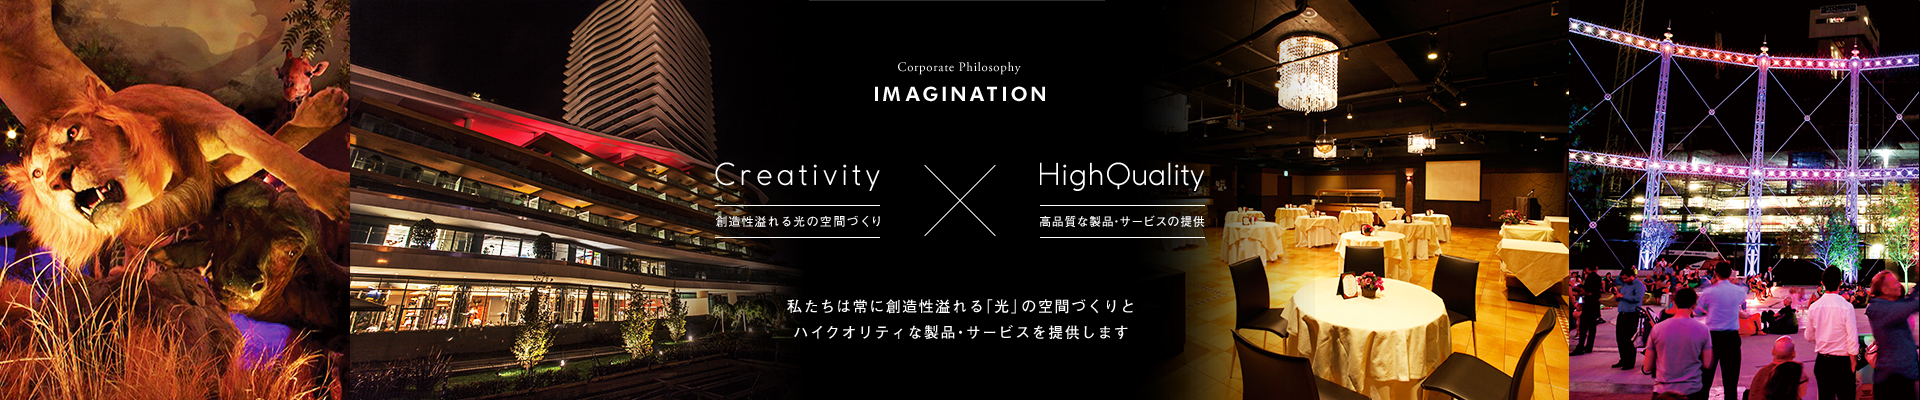 IMAGINATION-Creativity(創造性溢れる光の空間づくり)×HighQuality(高品質な製品・サービスの提供)-「私たちは常に創造性溢れる「光」の空間づくりとハイクオリティな製品・サービスを提供します」